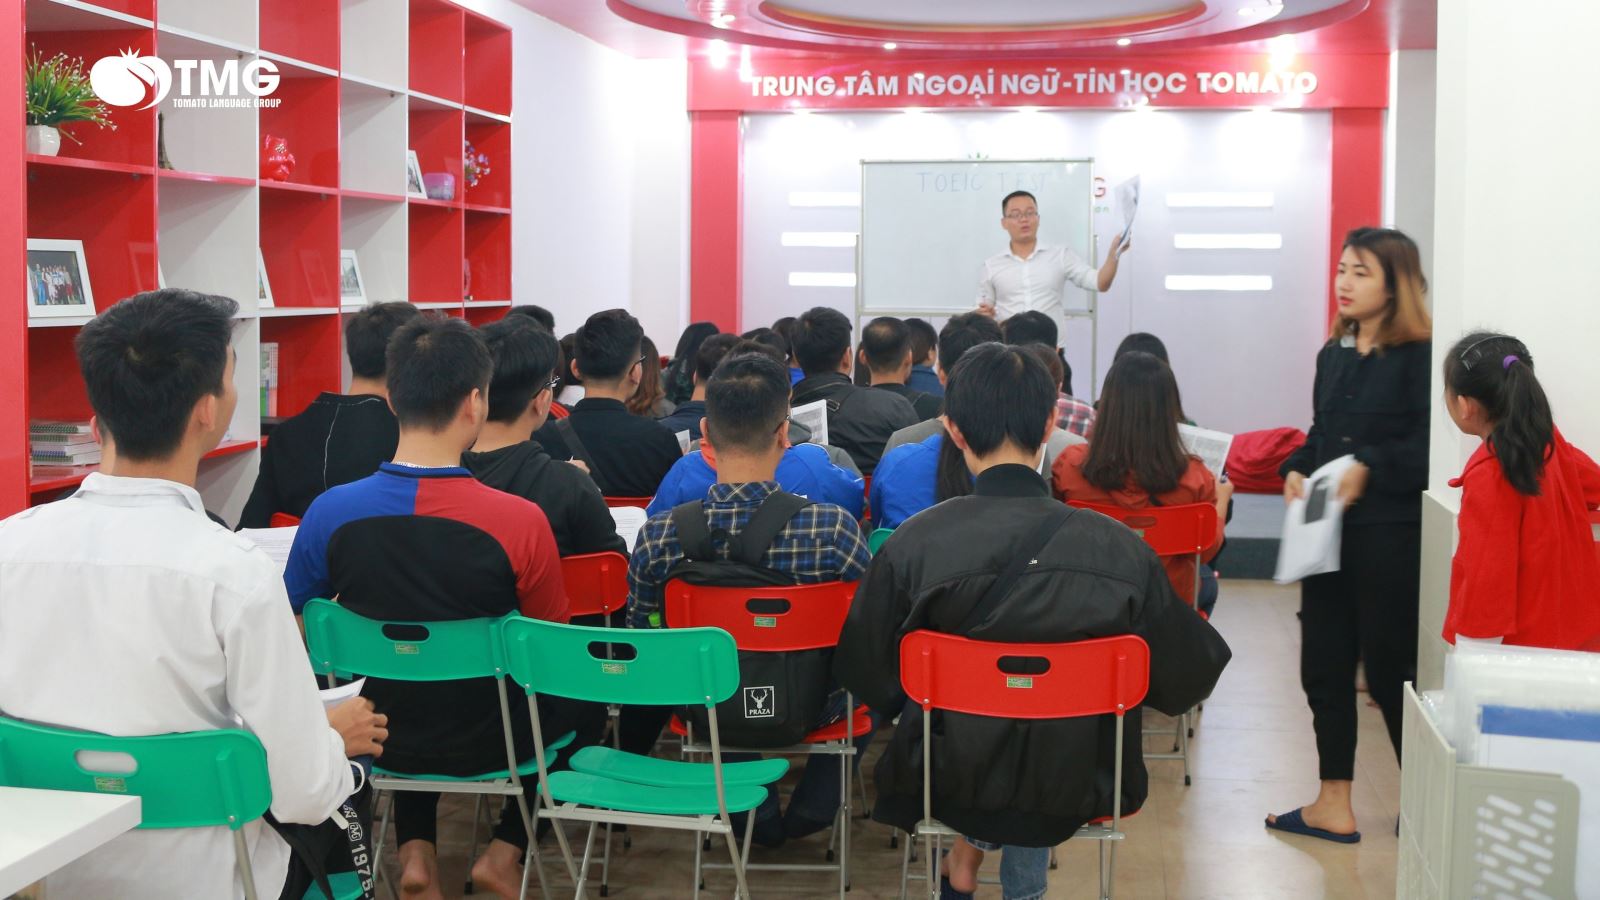 Lịch khai giảng tháng 7/2023 Trung tâm ngoại ngữ Tomato cơ sở Hà Nội  - Ảnh 2